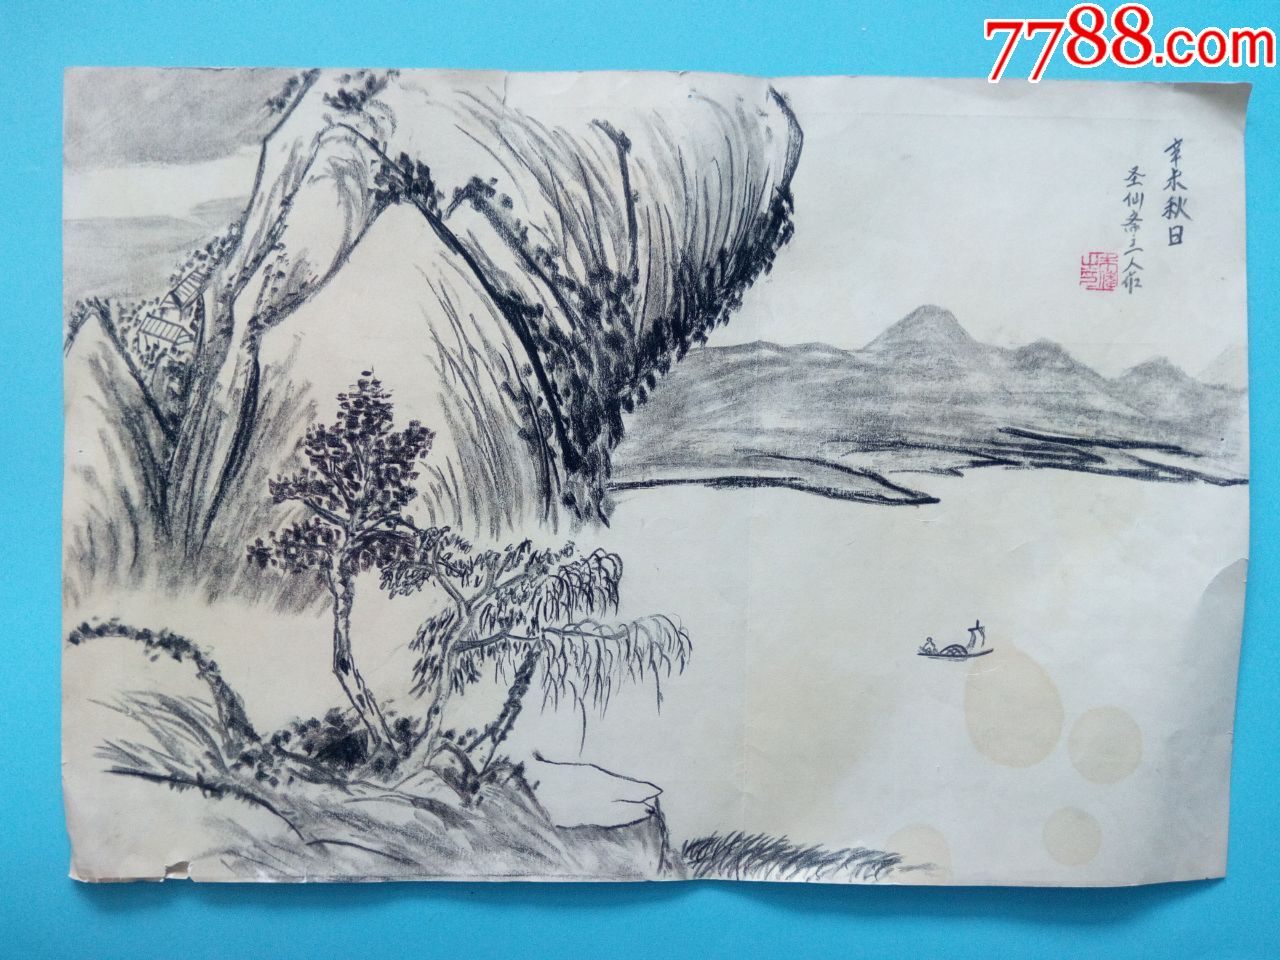 写意山水风景铅笔画素描风景作品画在档案纸上